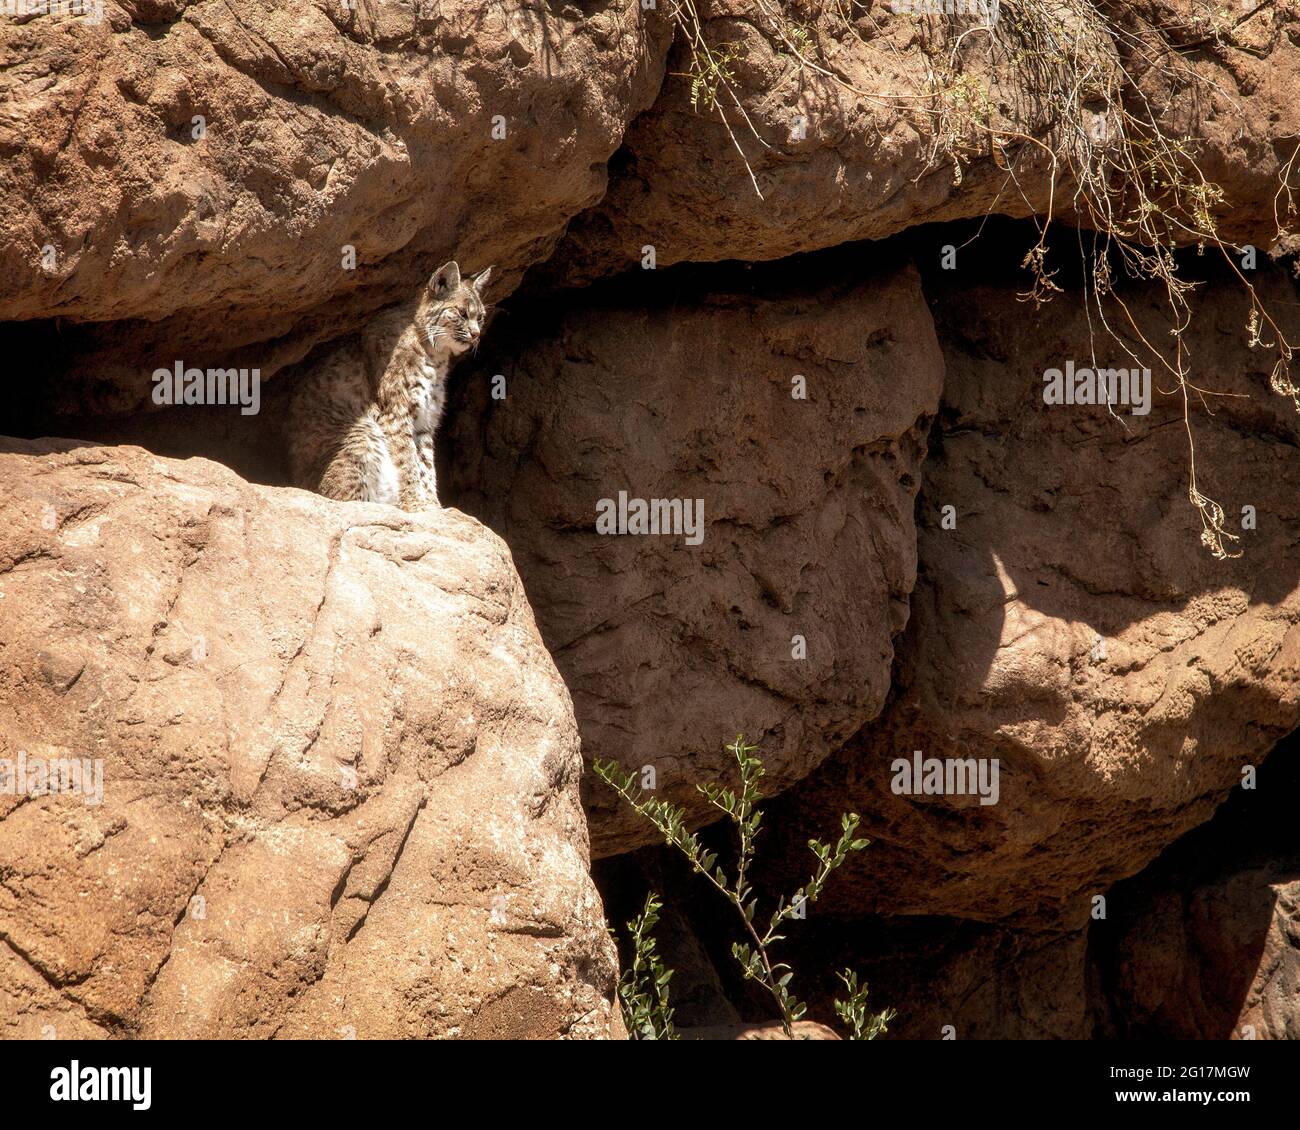 Un Bobcat se mezcla con la roca del desierto en el Arizona Sonora Desert Museum cerca de Tucson. Foto de stock